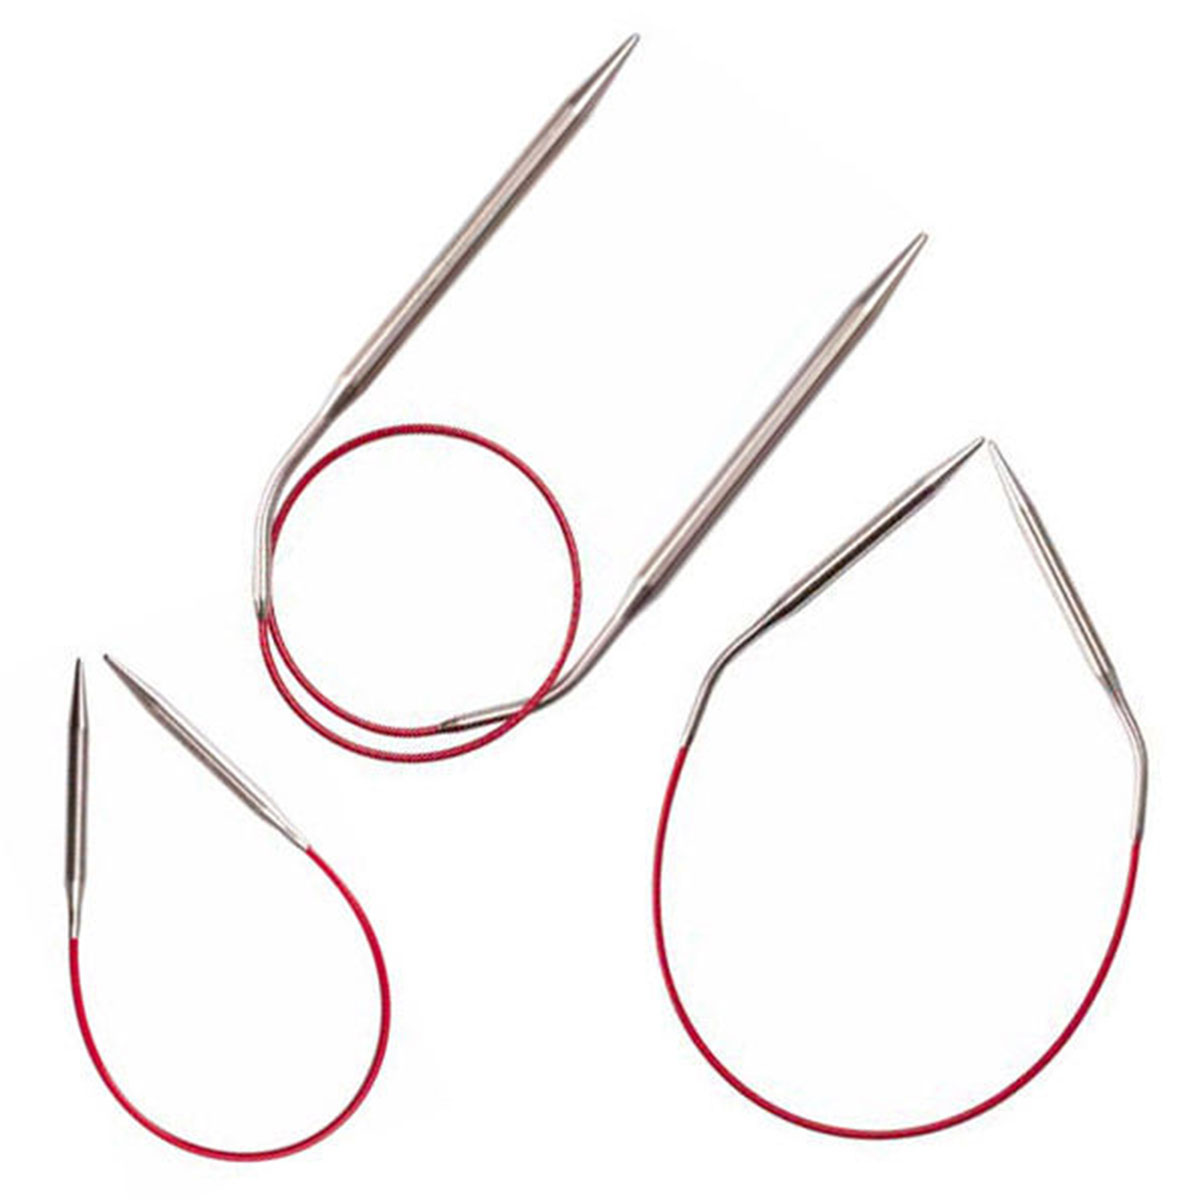 ChiaoGoo Knit RED Circular Needles - US 1.5 (2.5mm) - 9 Needles Reviews at  Jimmy Beans Wool